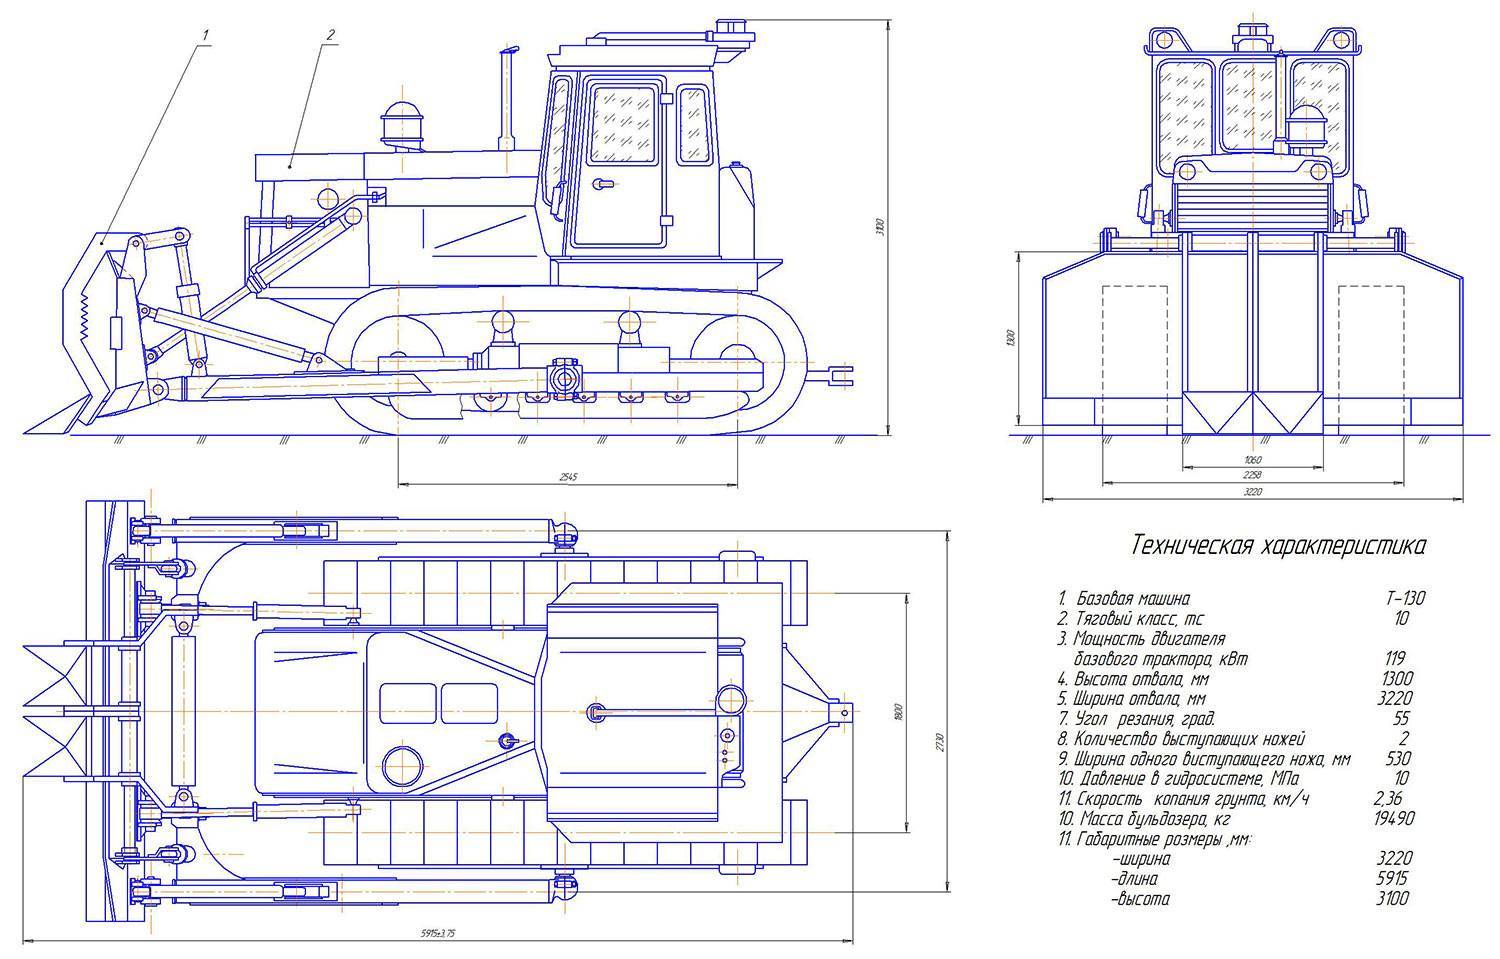 Технические характеристики бульдозера б10м и других моделей модельного ряда чтз